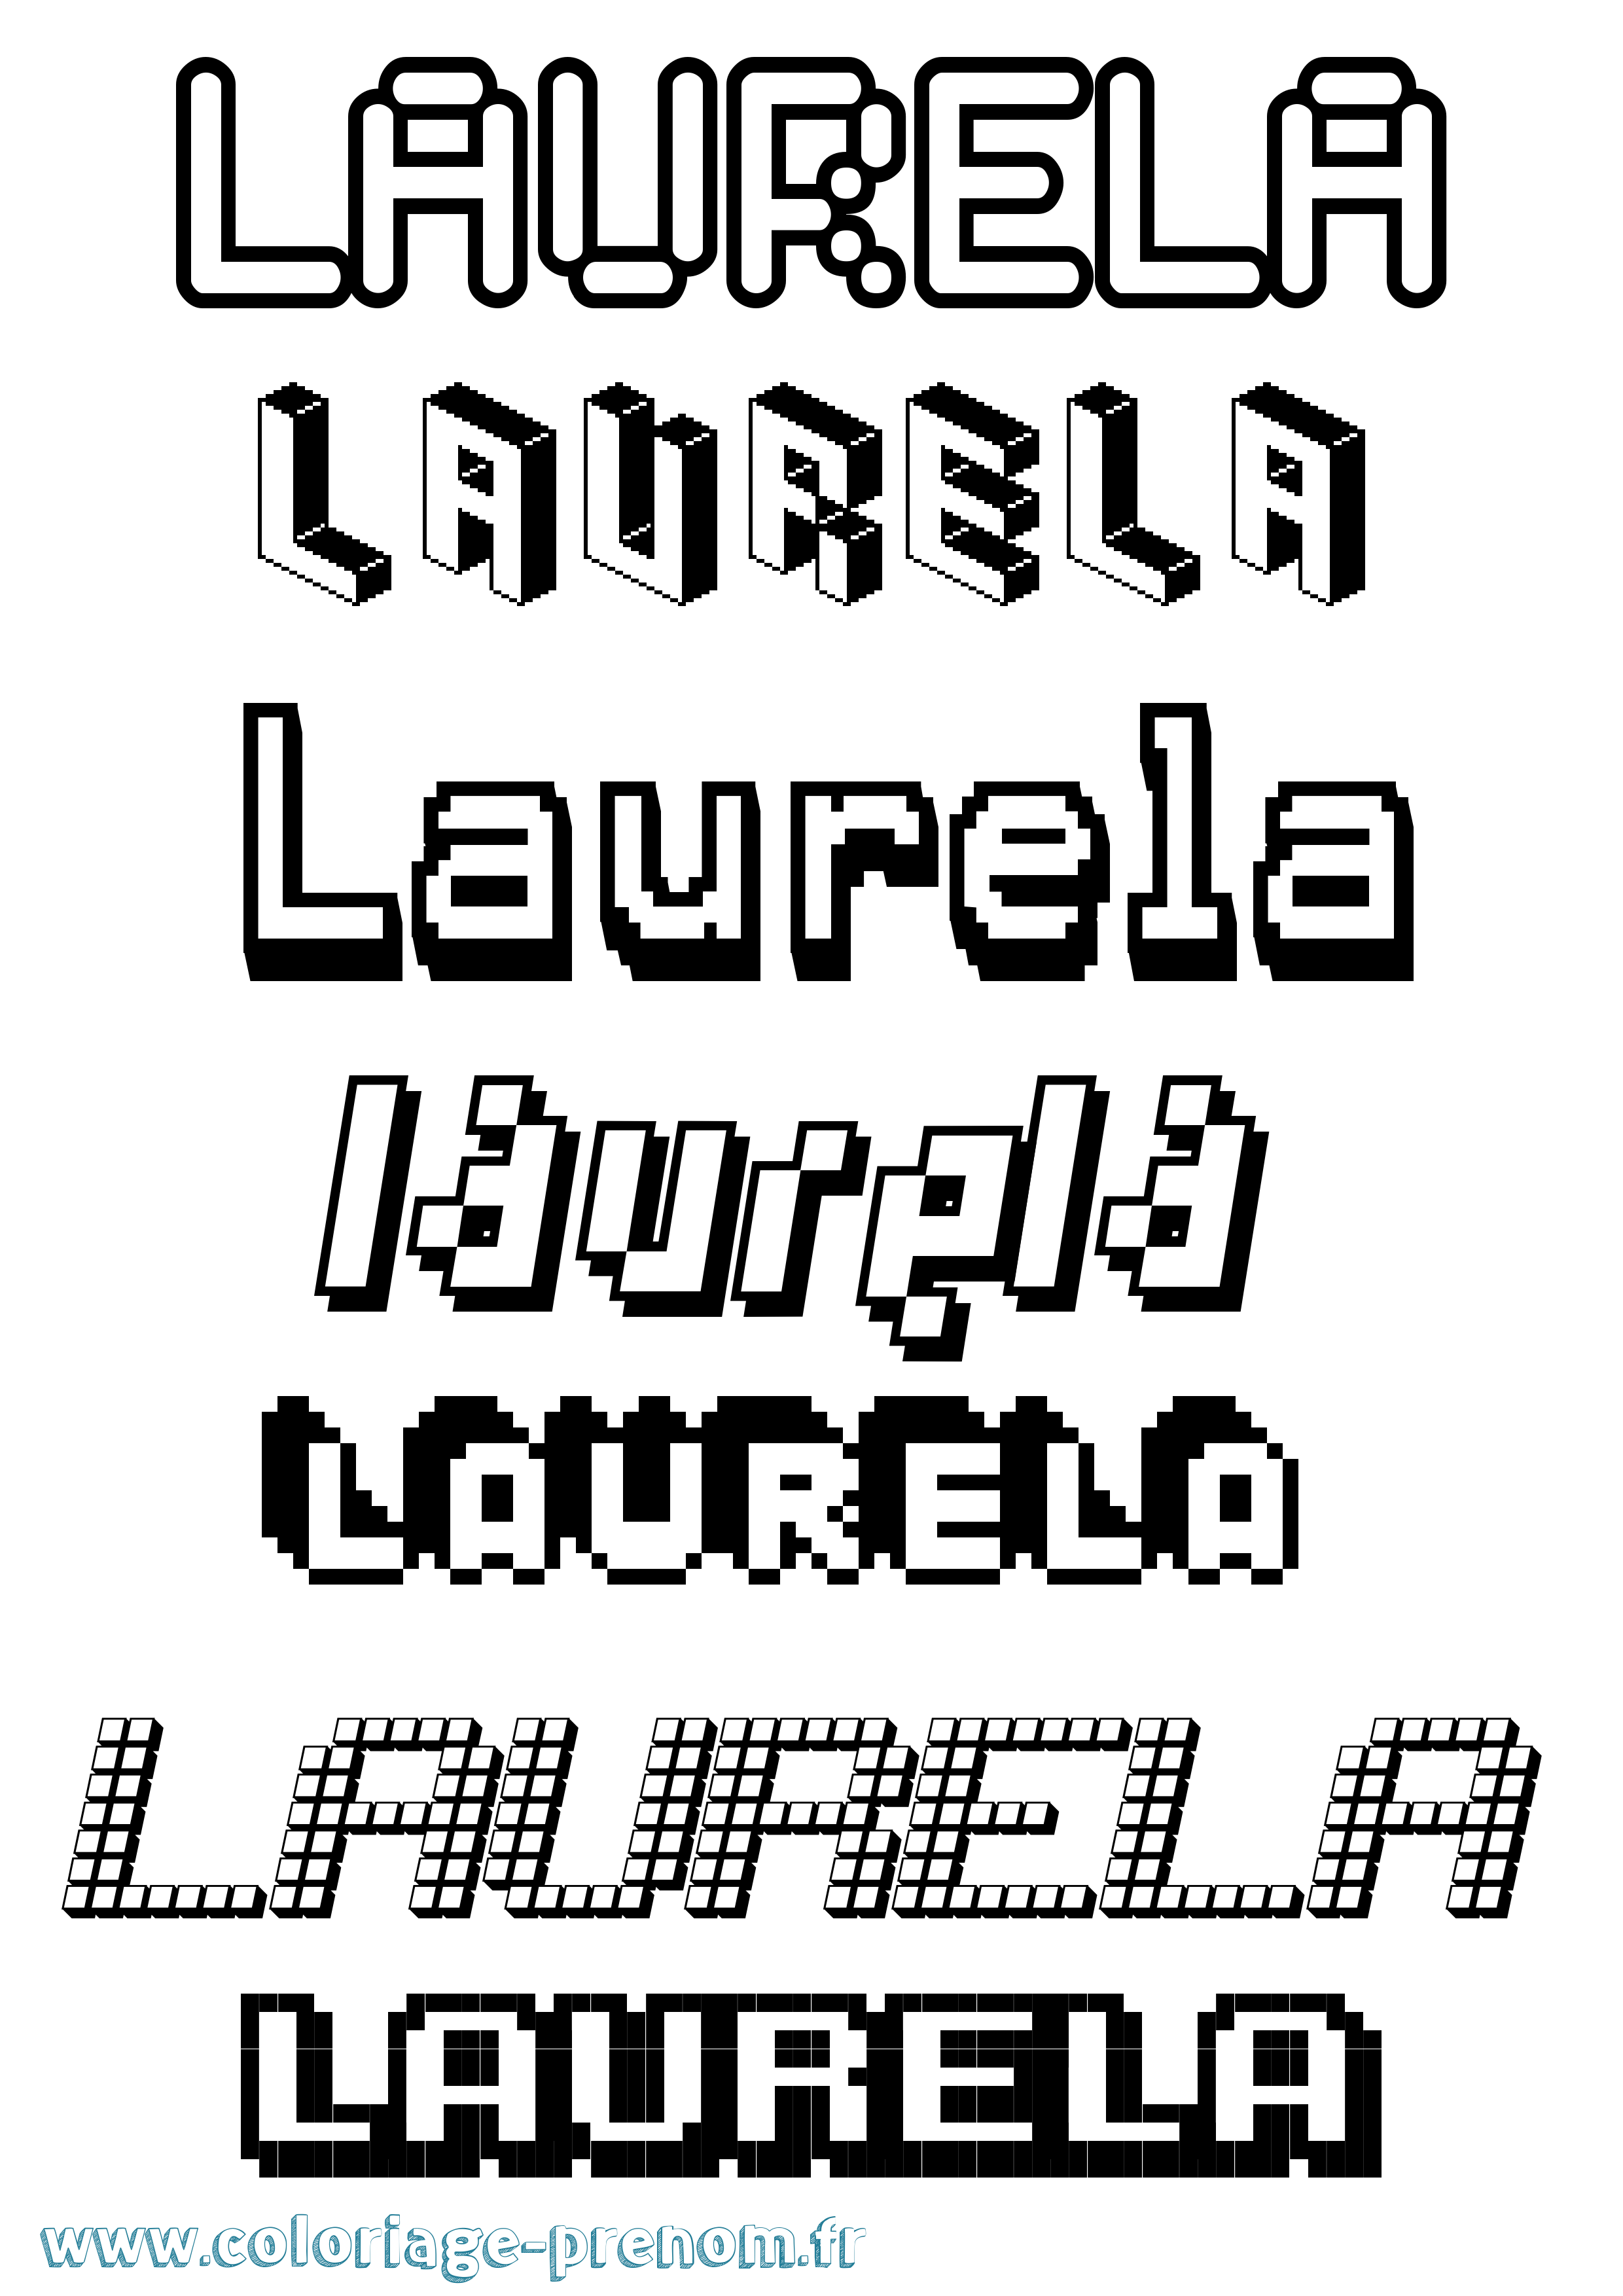 Coloriage prénom Laurela Pixel